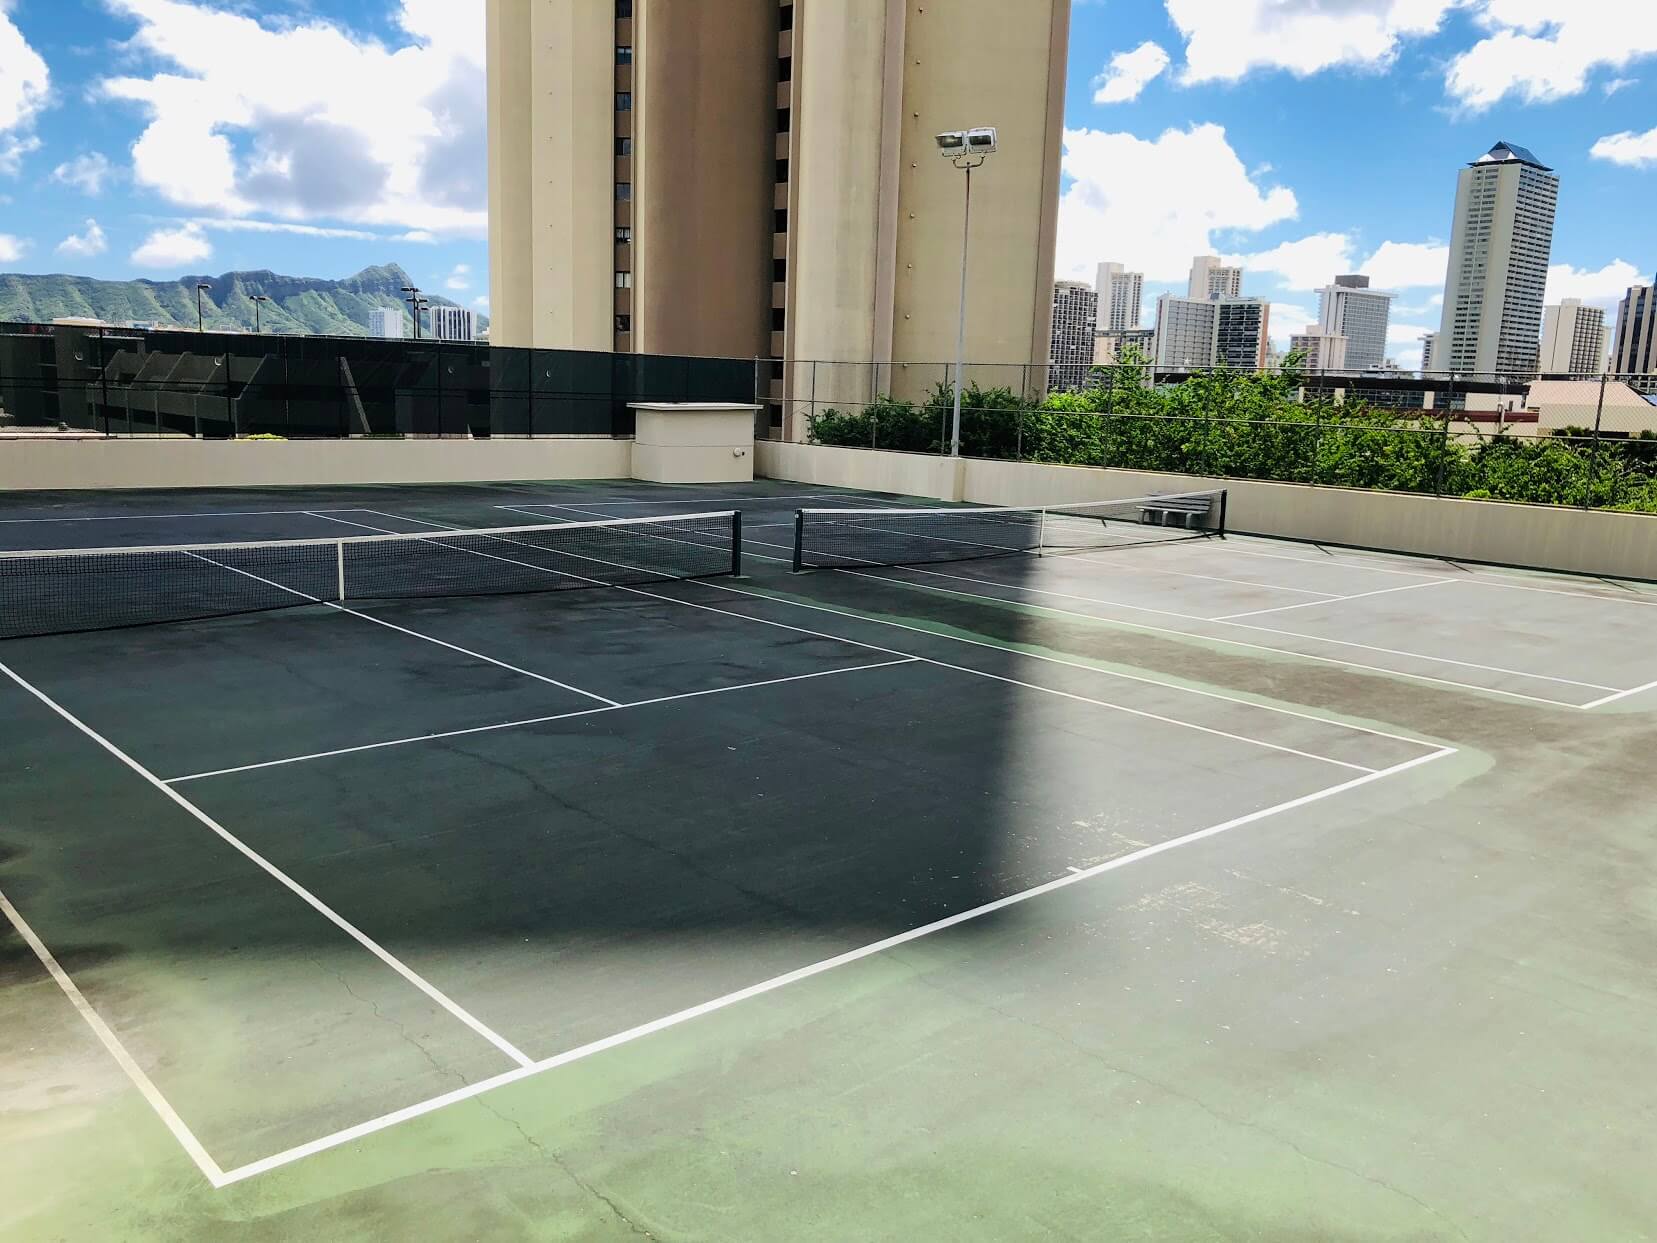 Iolani Court Plazaのテニス